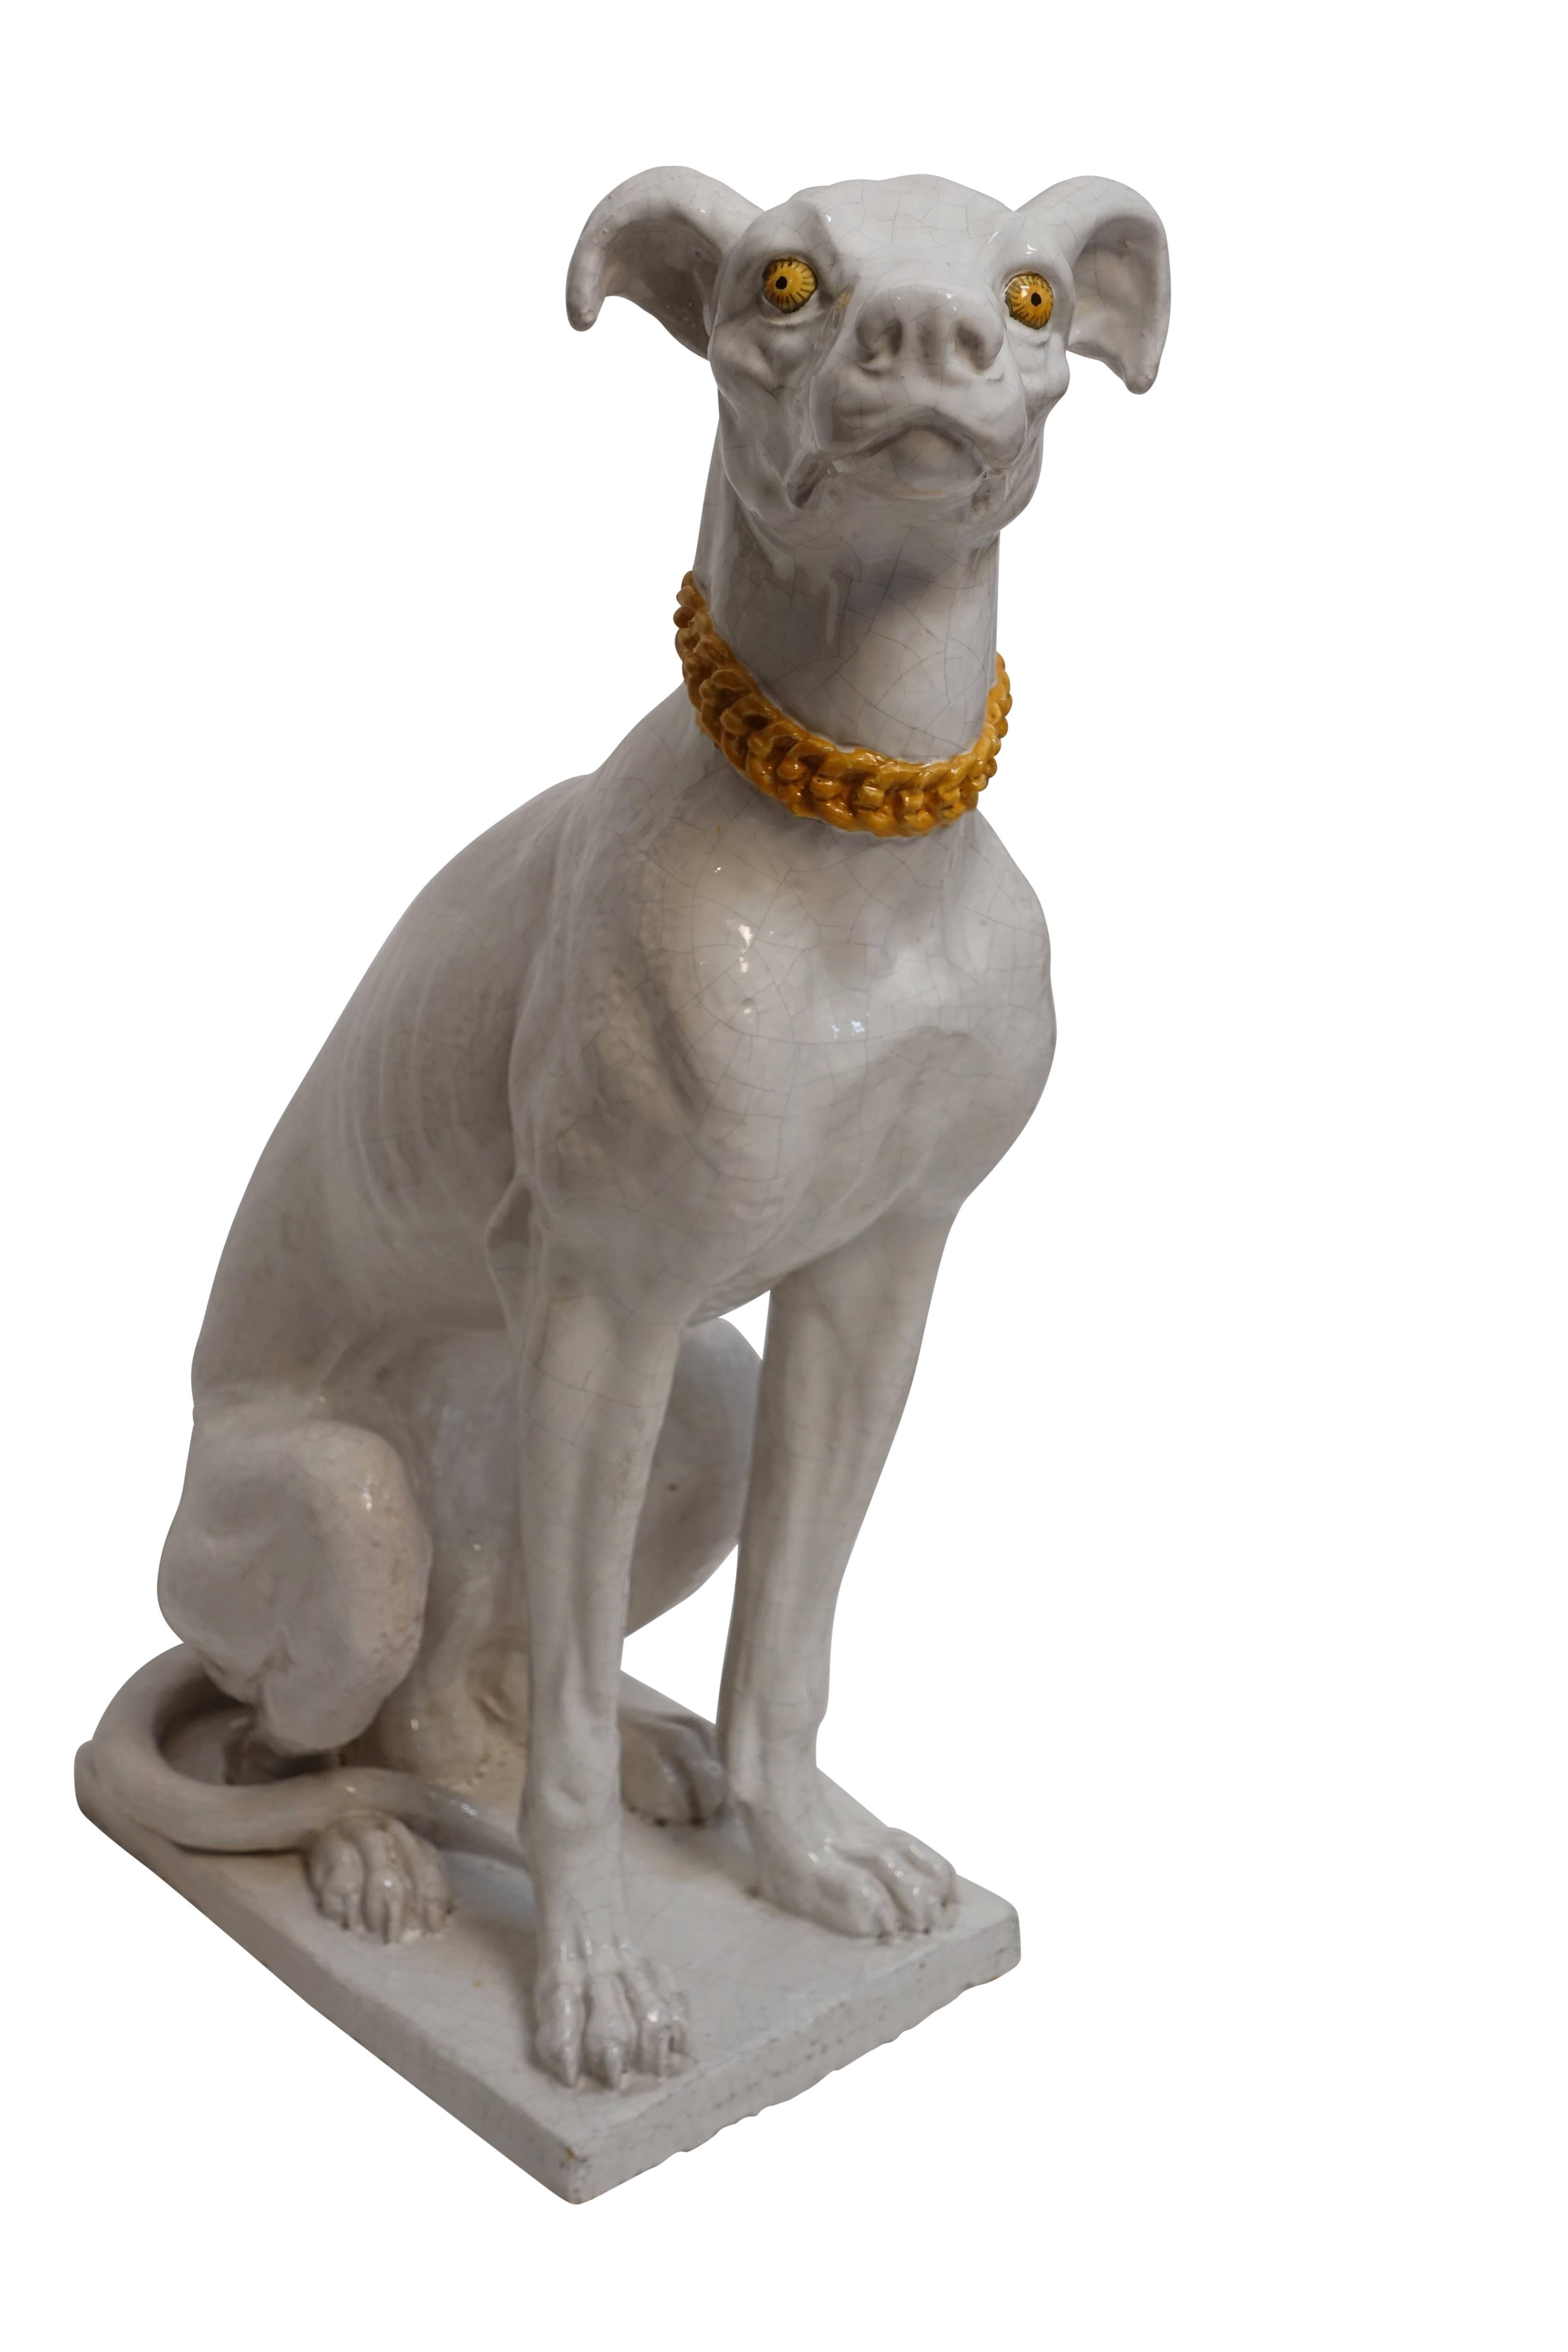 Grande statue de chien lévrier ou whippet en faïence:: glaçure blanche avec des accents jaunes. Italie:: années 1950-1960.